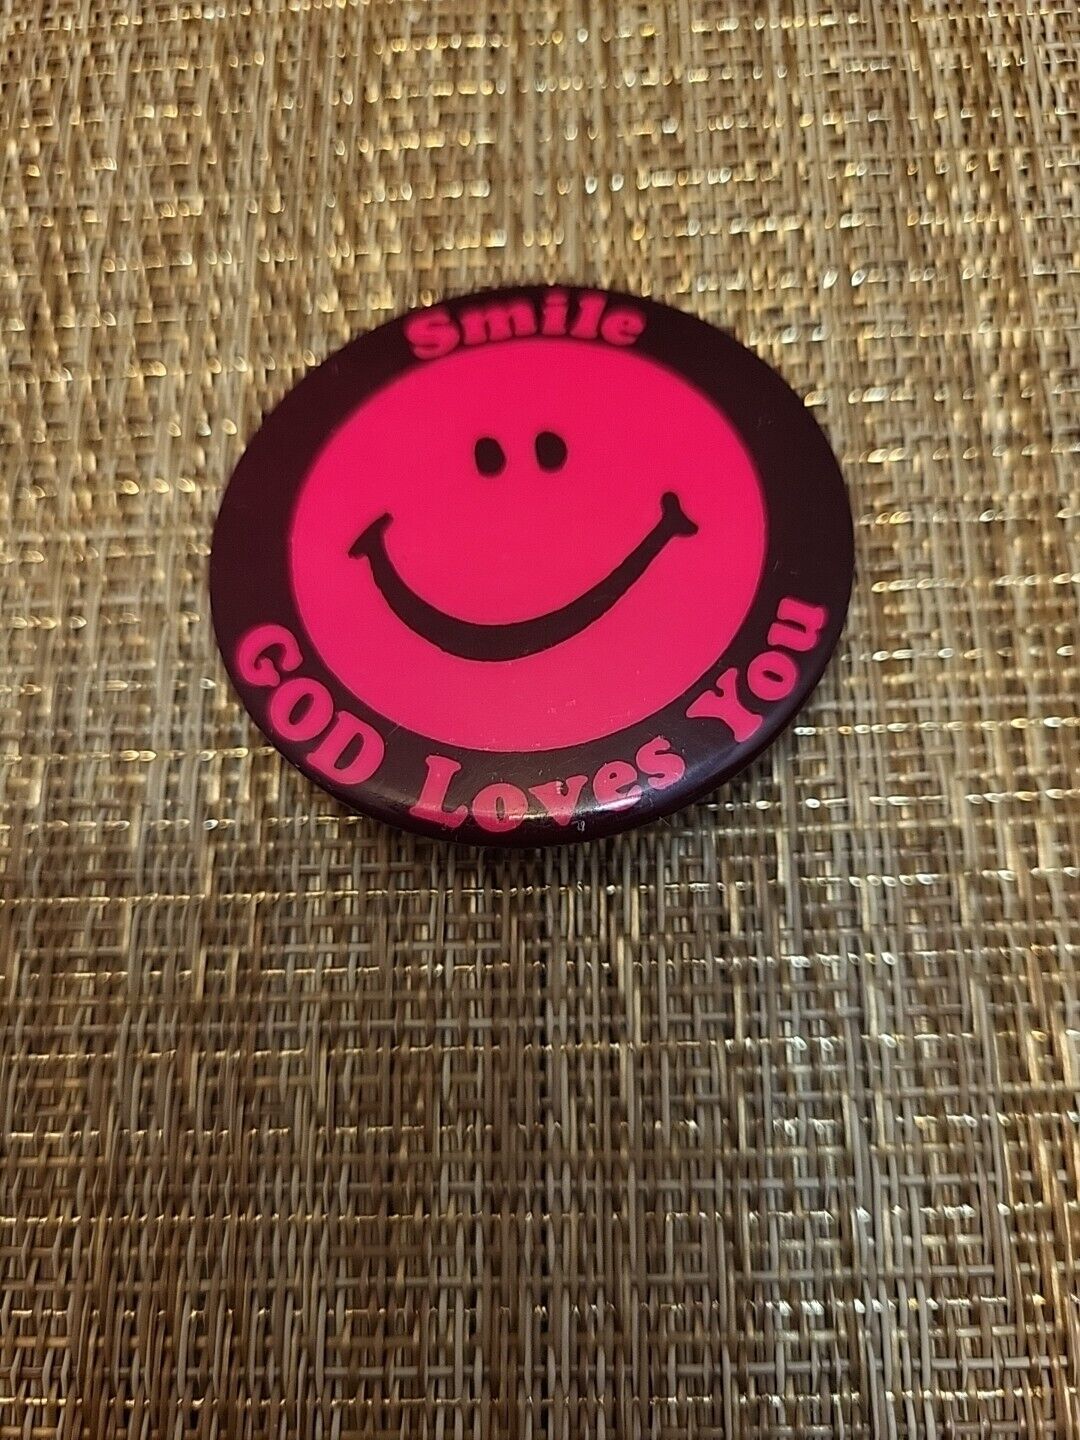 Vintage Pinback Button- Smile God Loves You PINK Smiley Face